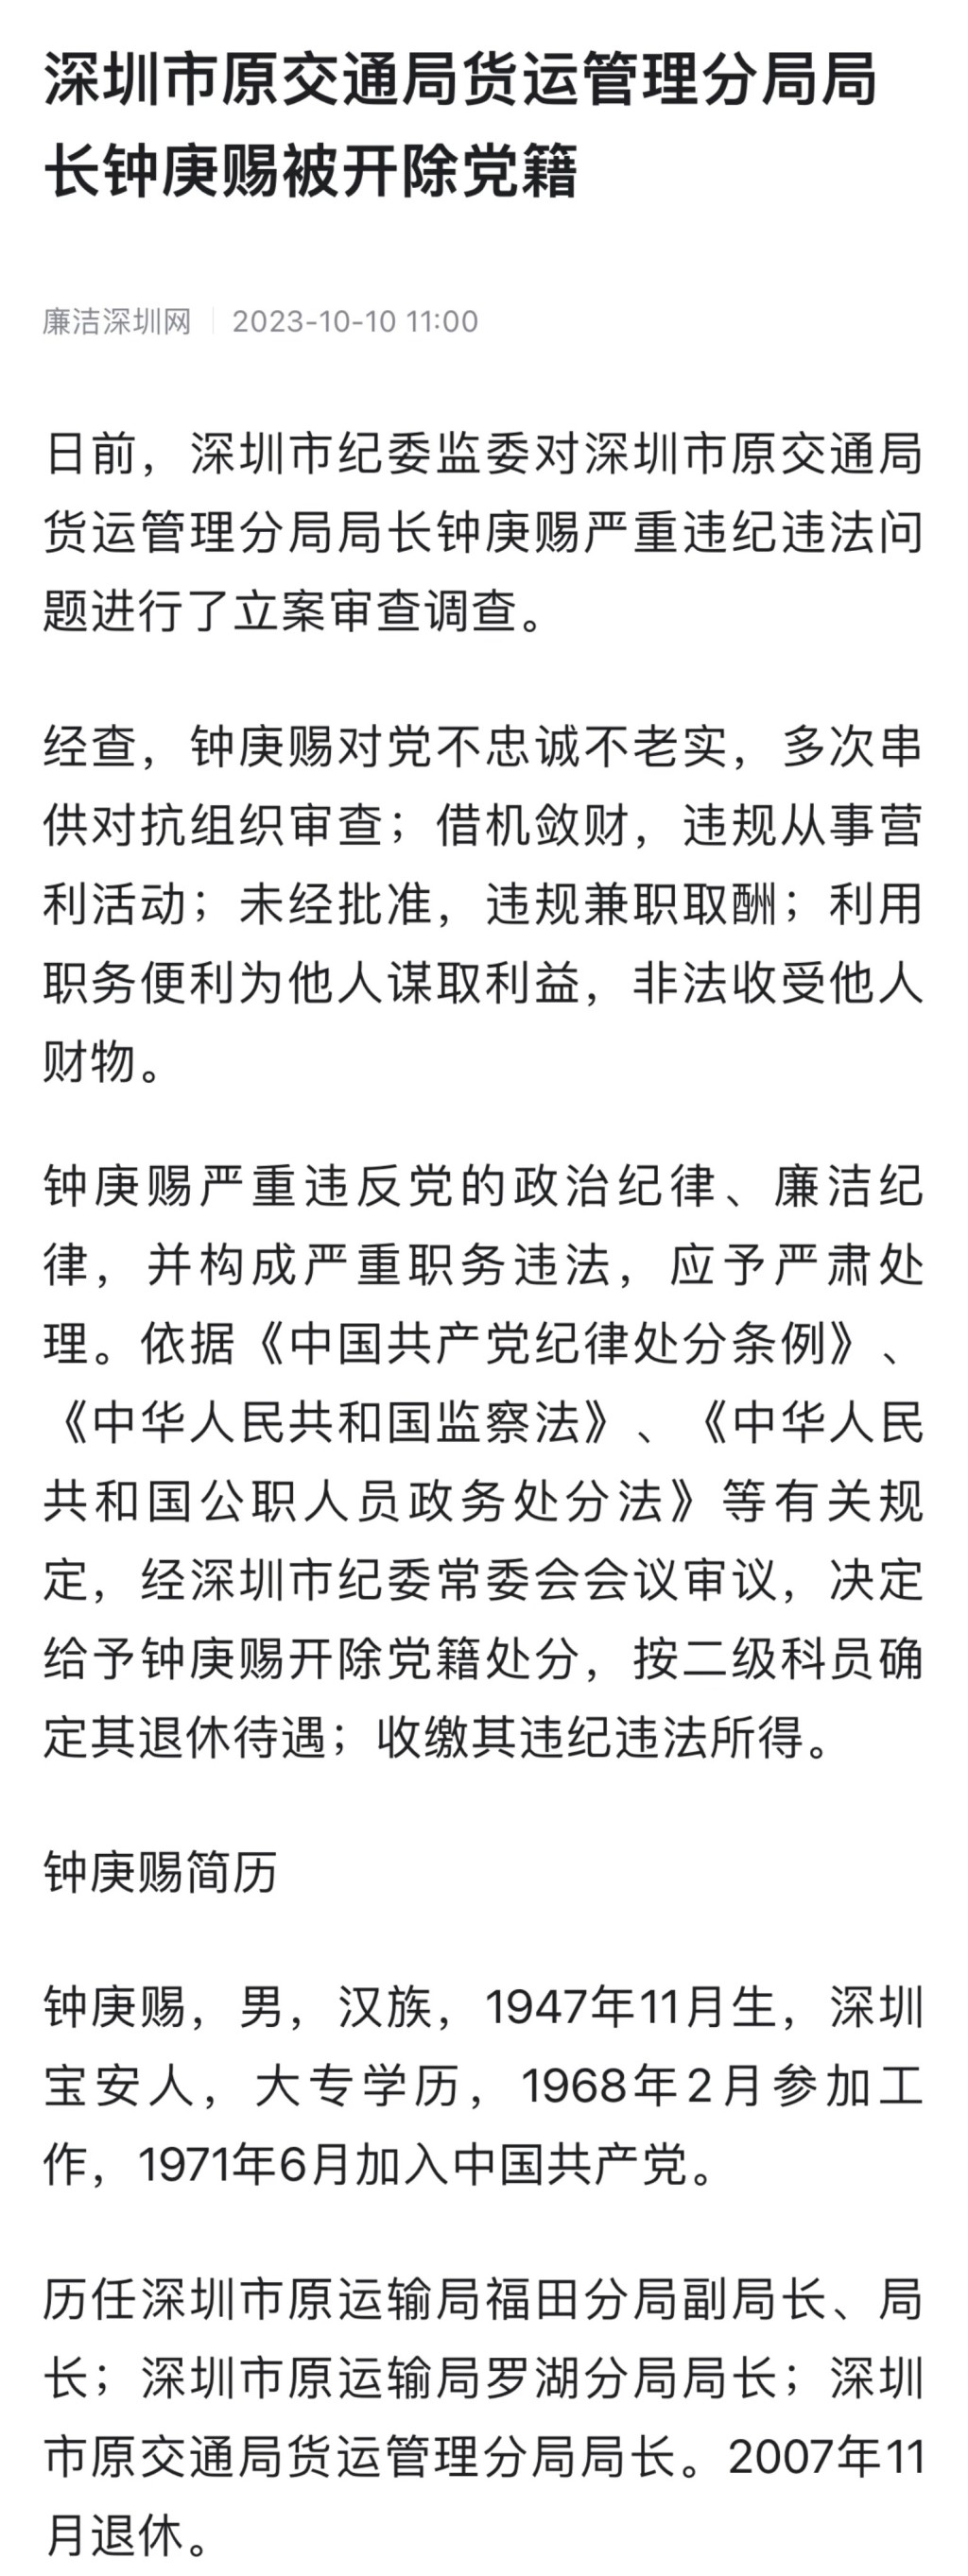 深圳原交通局货运管理分局局长锺庚赐被开除党藉及收缴违法所得。